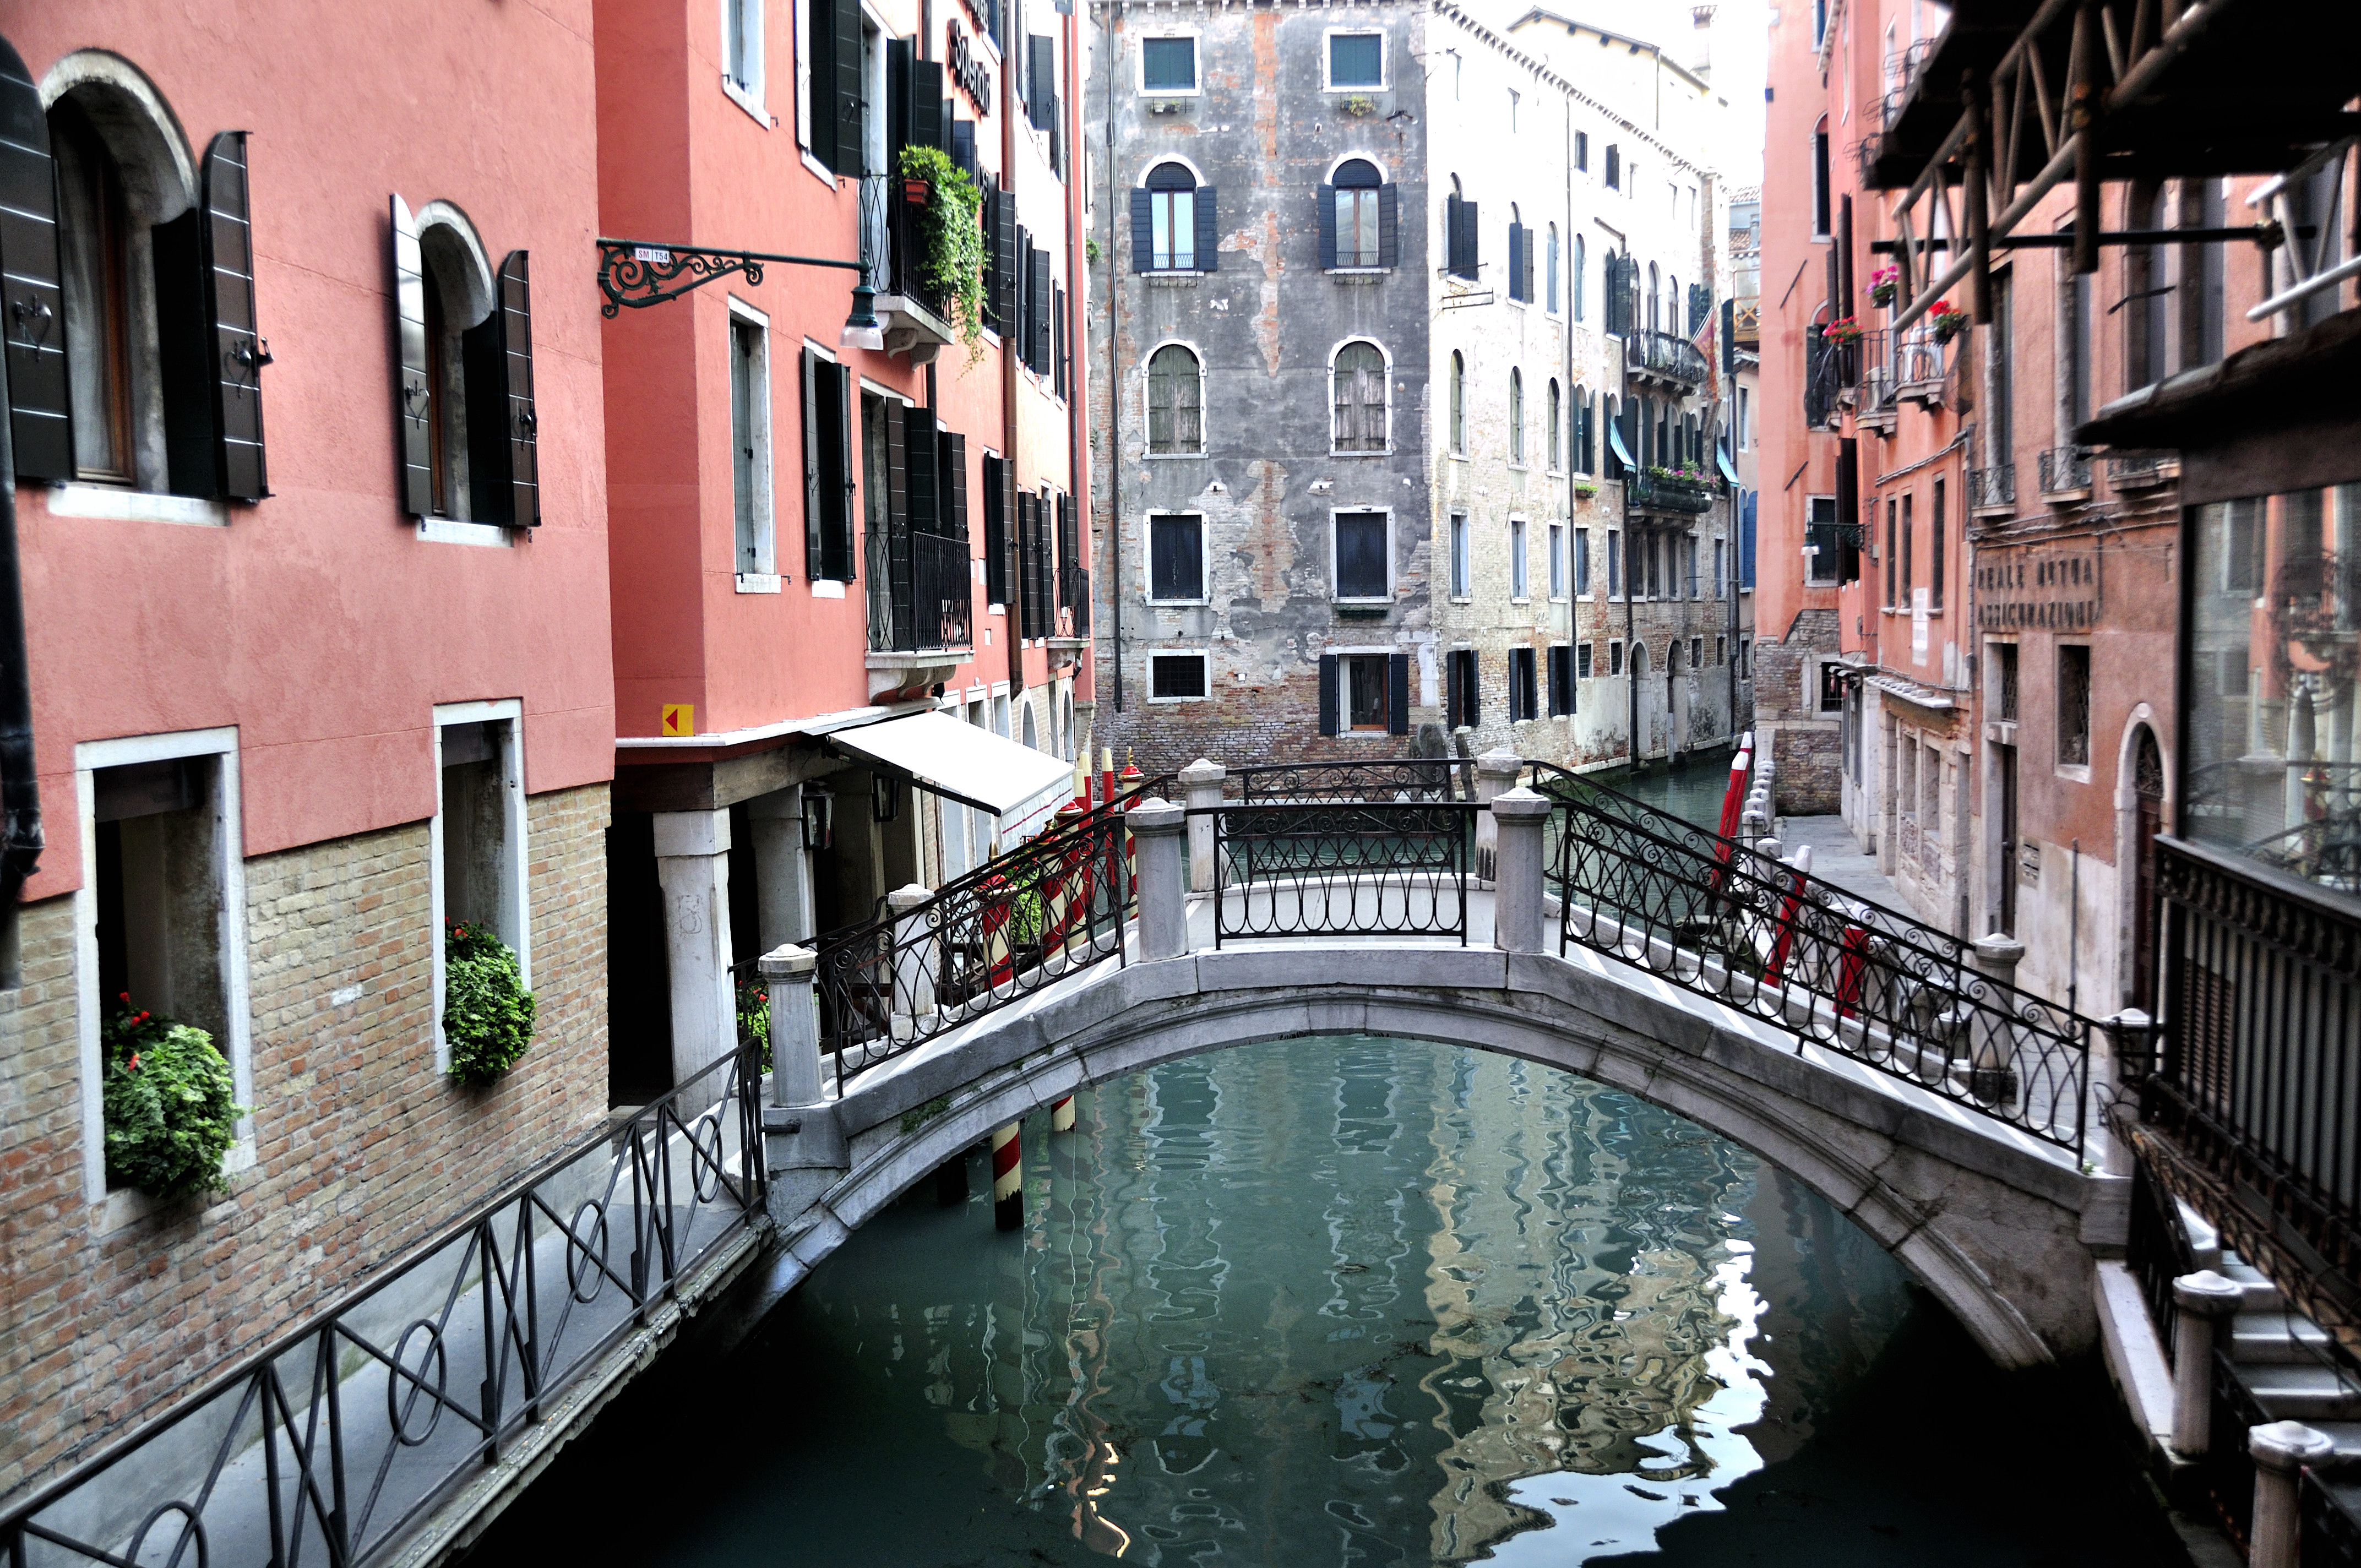 Venezia_Venice_Italy_-_Creative_Commons_by_gnuckx